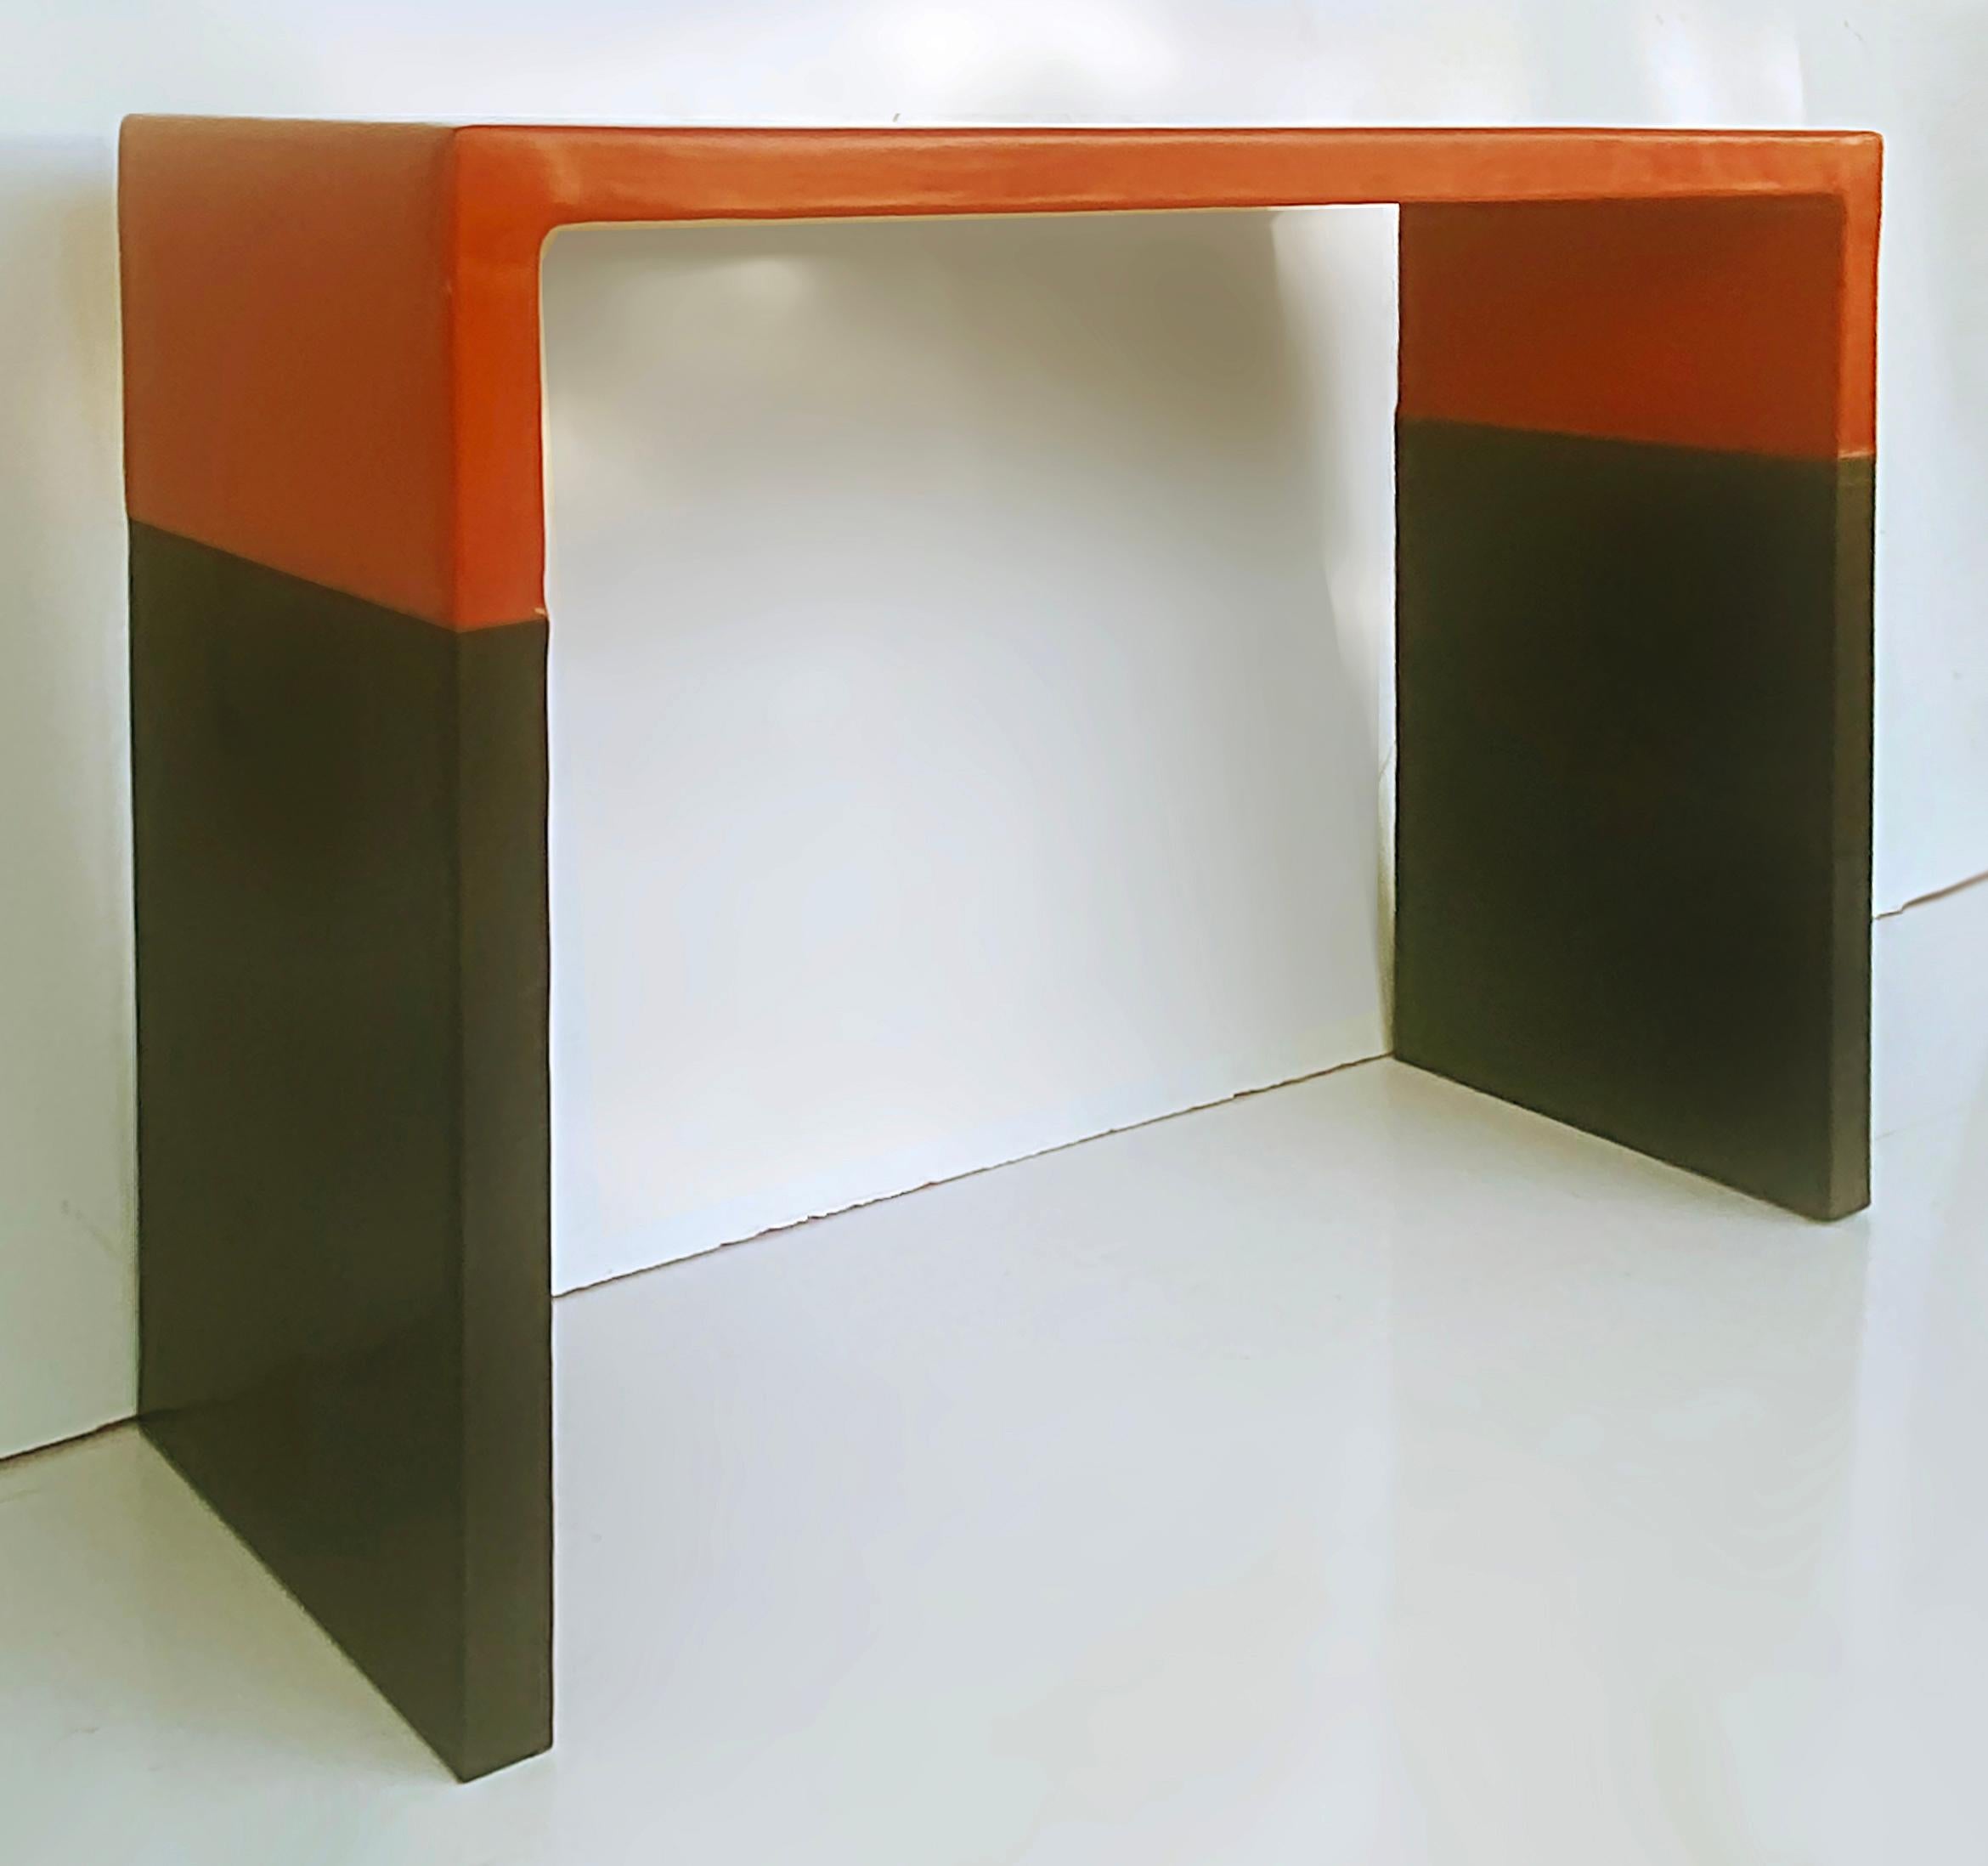 Robert Kuo Baker Möbel Lack, Kupfer Konsolentisch, ca. 2000

Zum Verkauf angeboten wird ein seltener und wichtiger Entwurf von Robert Kuo für Baker Furniture. Dieser Konsolentisch aus Kupfer, der orange lackiert wurde, entstand um das Jahr 2000. 